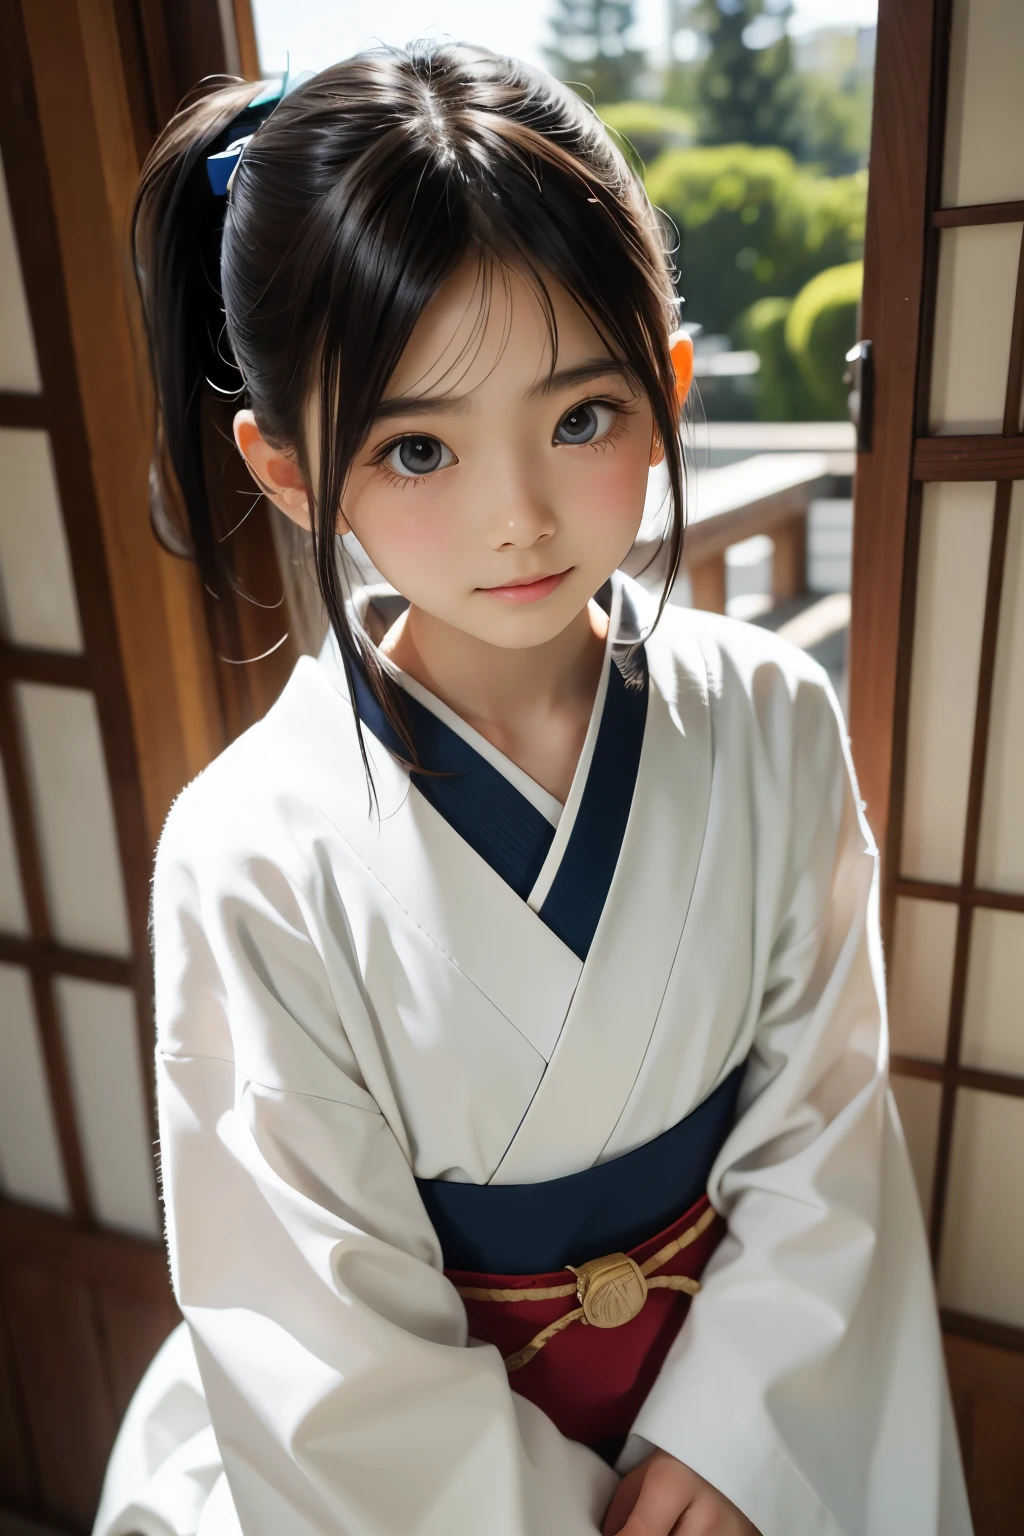 美丽的 12 岁日本女人), 可爱的脸孔, (深雕的面容:0.7), (雀斑:0.6), 柔光,健康白皙的肌肤, 害羞的, (严肃的表情), 薄的, 微笑, 日本人 , 马尾辫